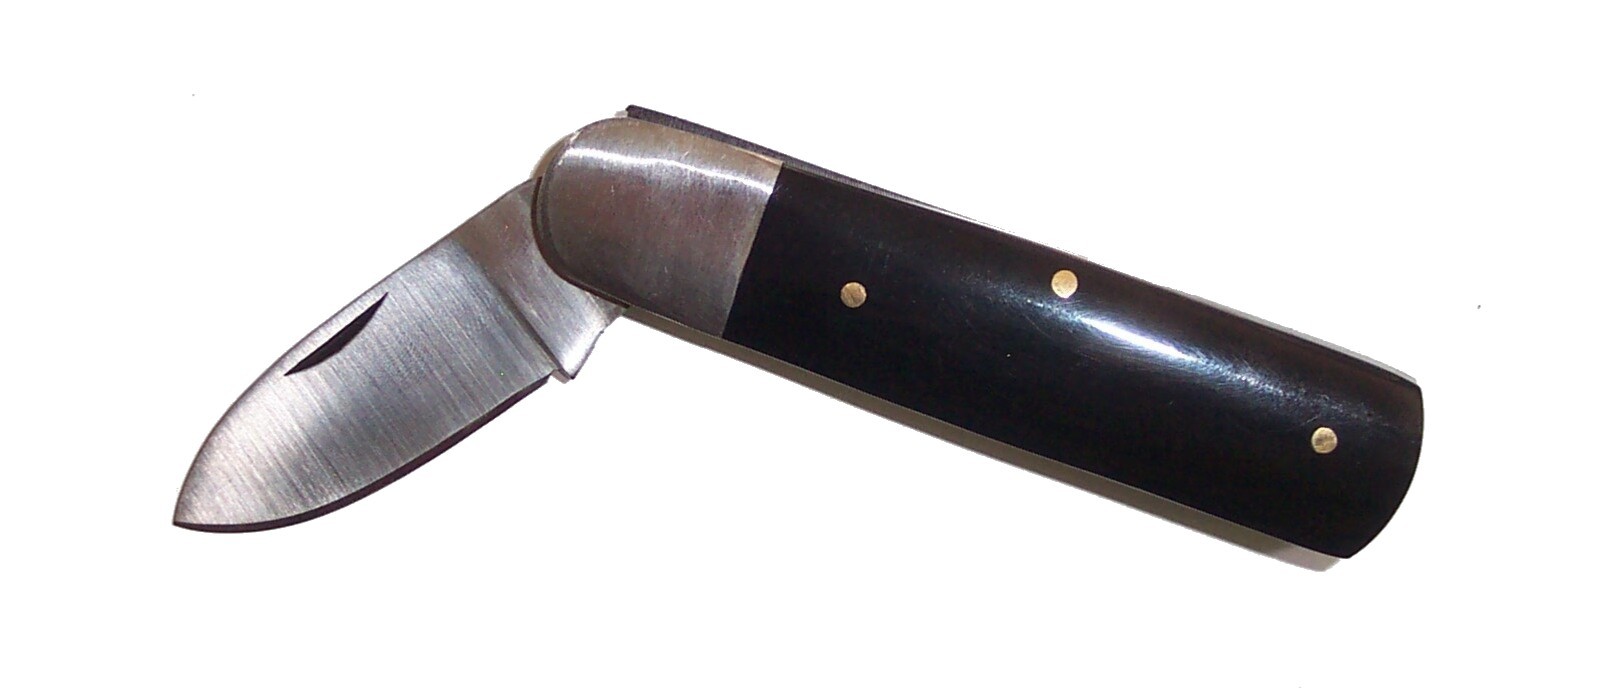 couteau à huitres — Wiktionnaire, le dictionnaire libre